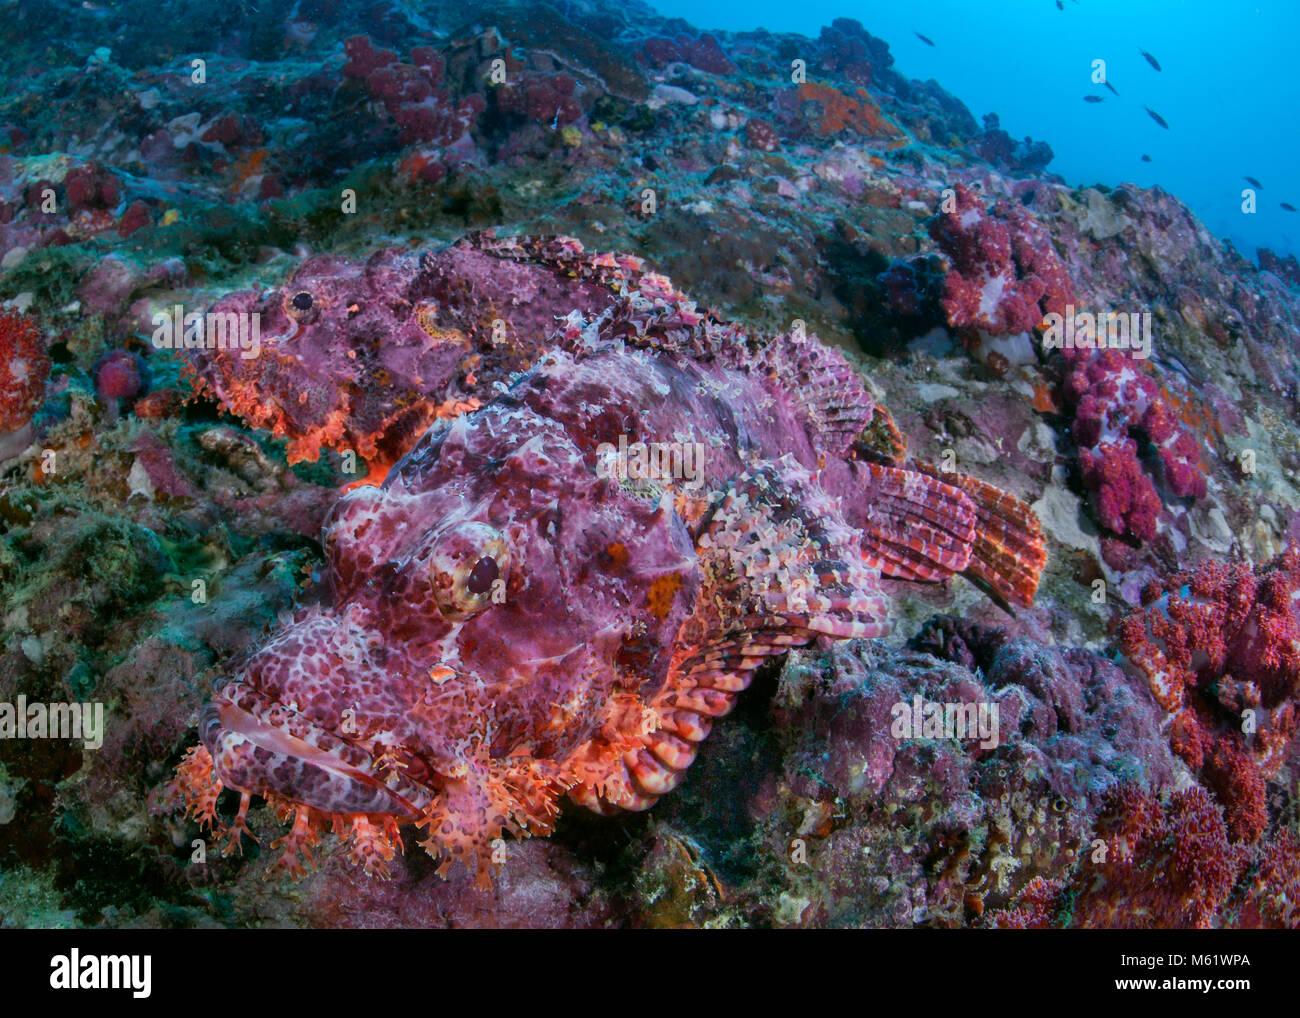 Paire de rascasses barbus n'ont pas où se cacher sur un récif de corail mort. Richelieu Rock, la mer d'Andaman, en Thaïlande. Banque D'Images